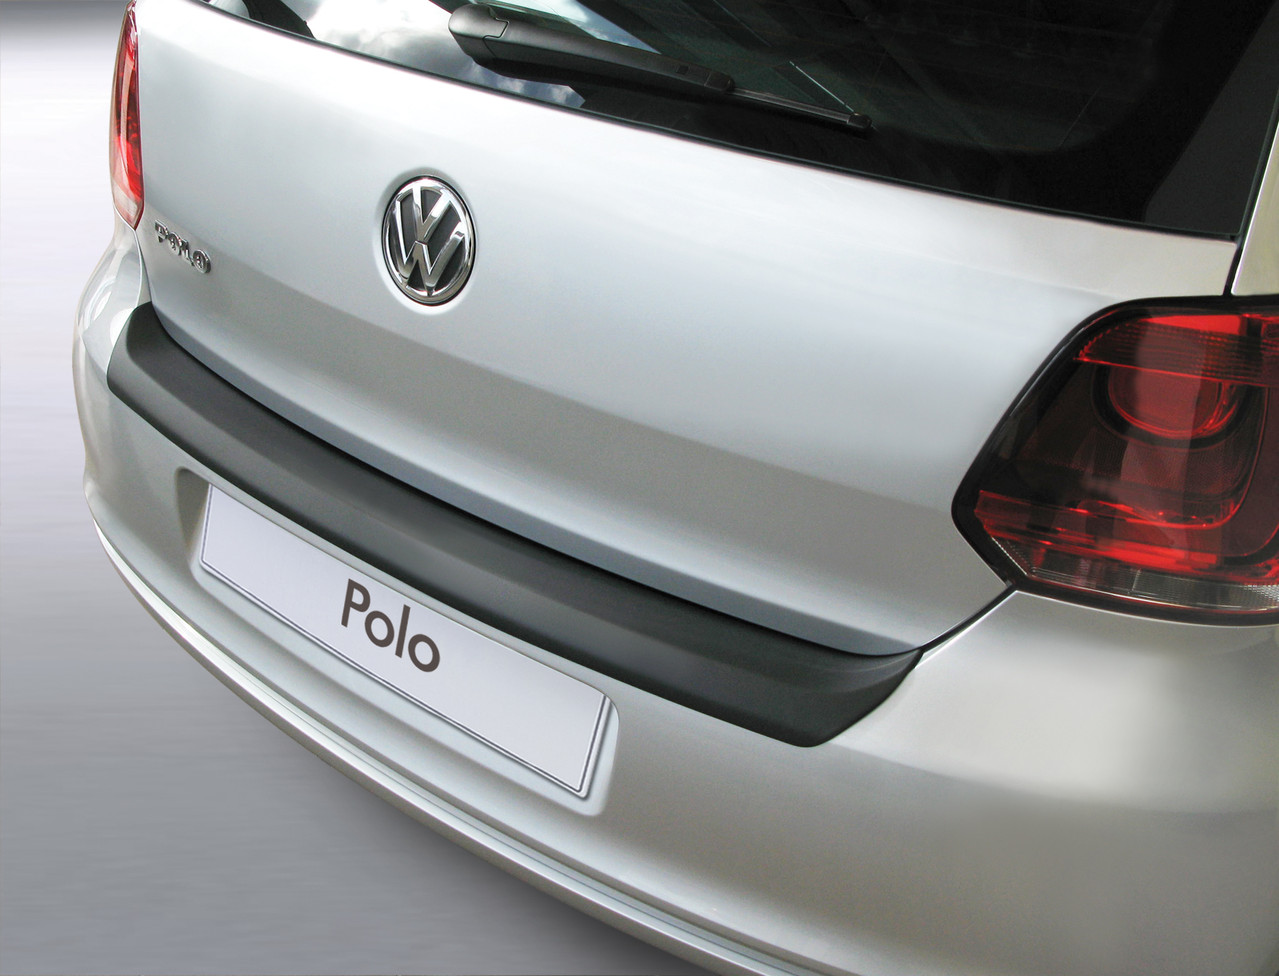 Ladekantenschutz für VW POLO - Schutz für die Ladekante Ihres Fahrzeuges | Abdeckblenden